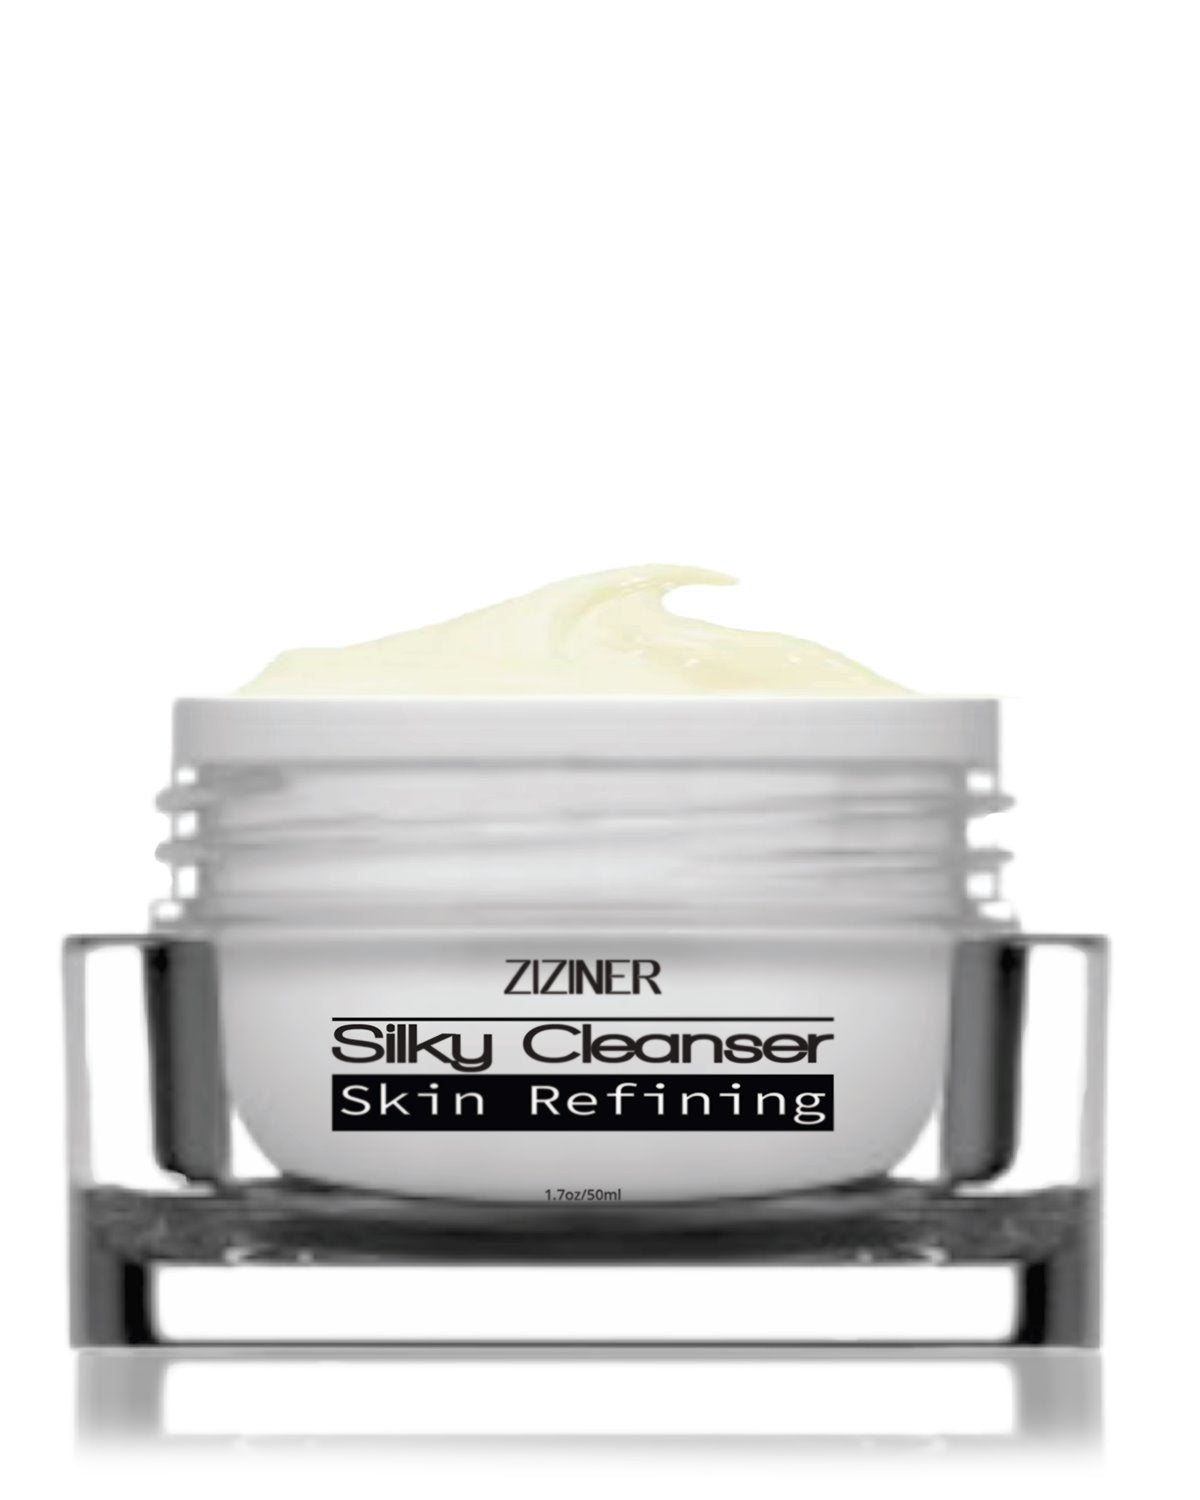 Silky Cleanser Skincare Ziziner 